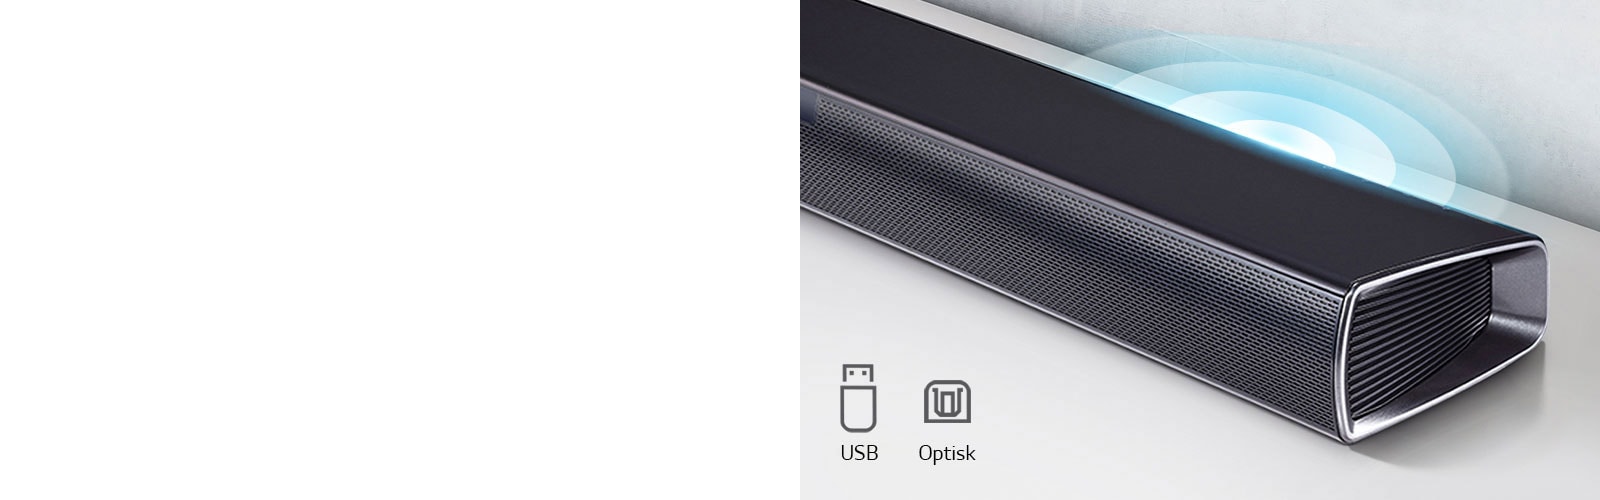 En LG Soundbar står på en hvid hylde. Lydgrafikken kommer ud af højttaleren. Det viser ikonerne for USB, Optisk.